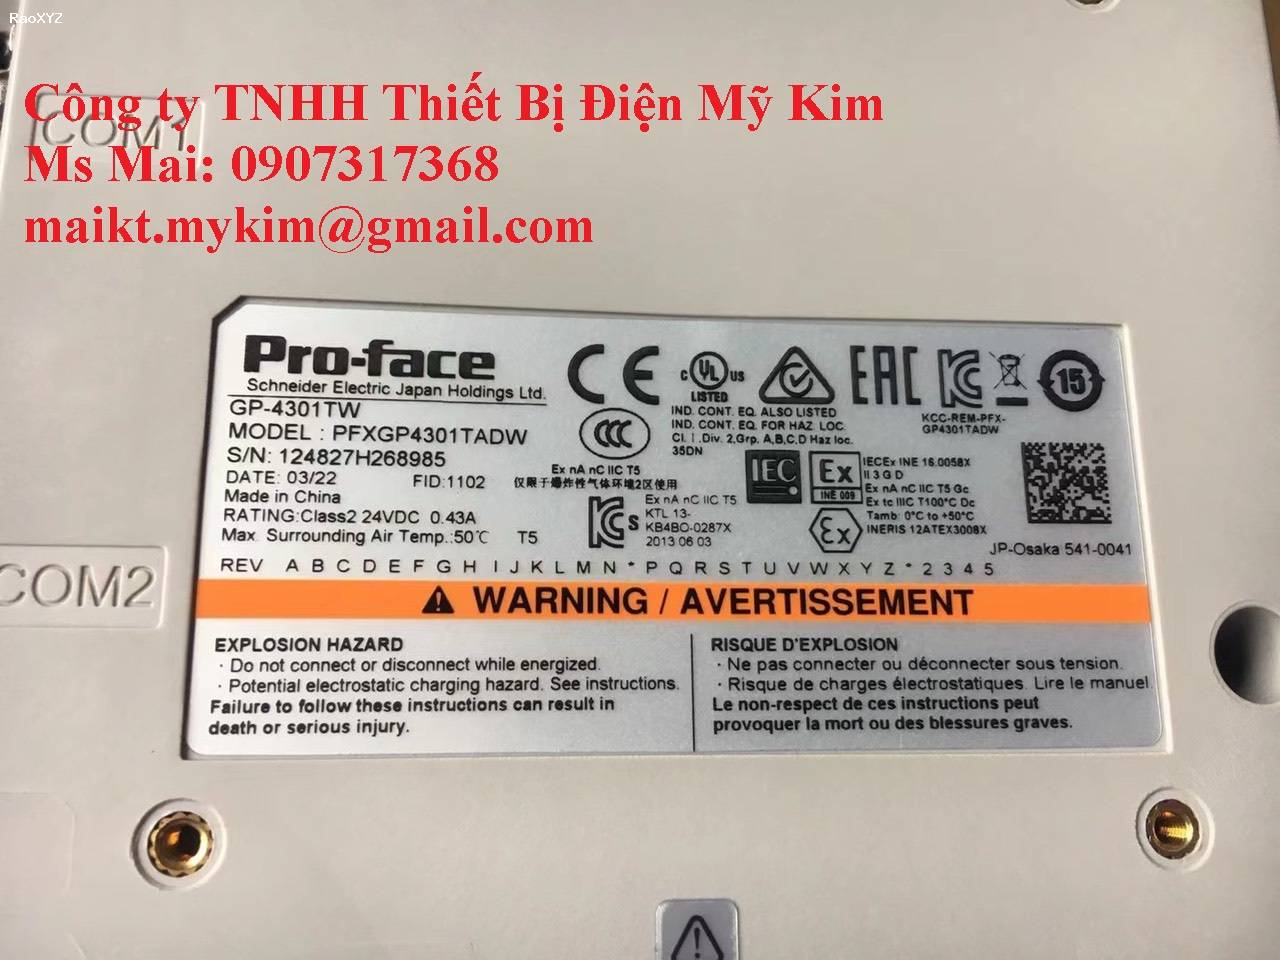 Thiết Bị Điện Mỹ Kim - HMI Proface PFXGP4301TADW 5.7 inch